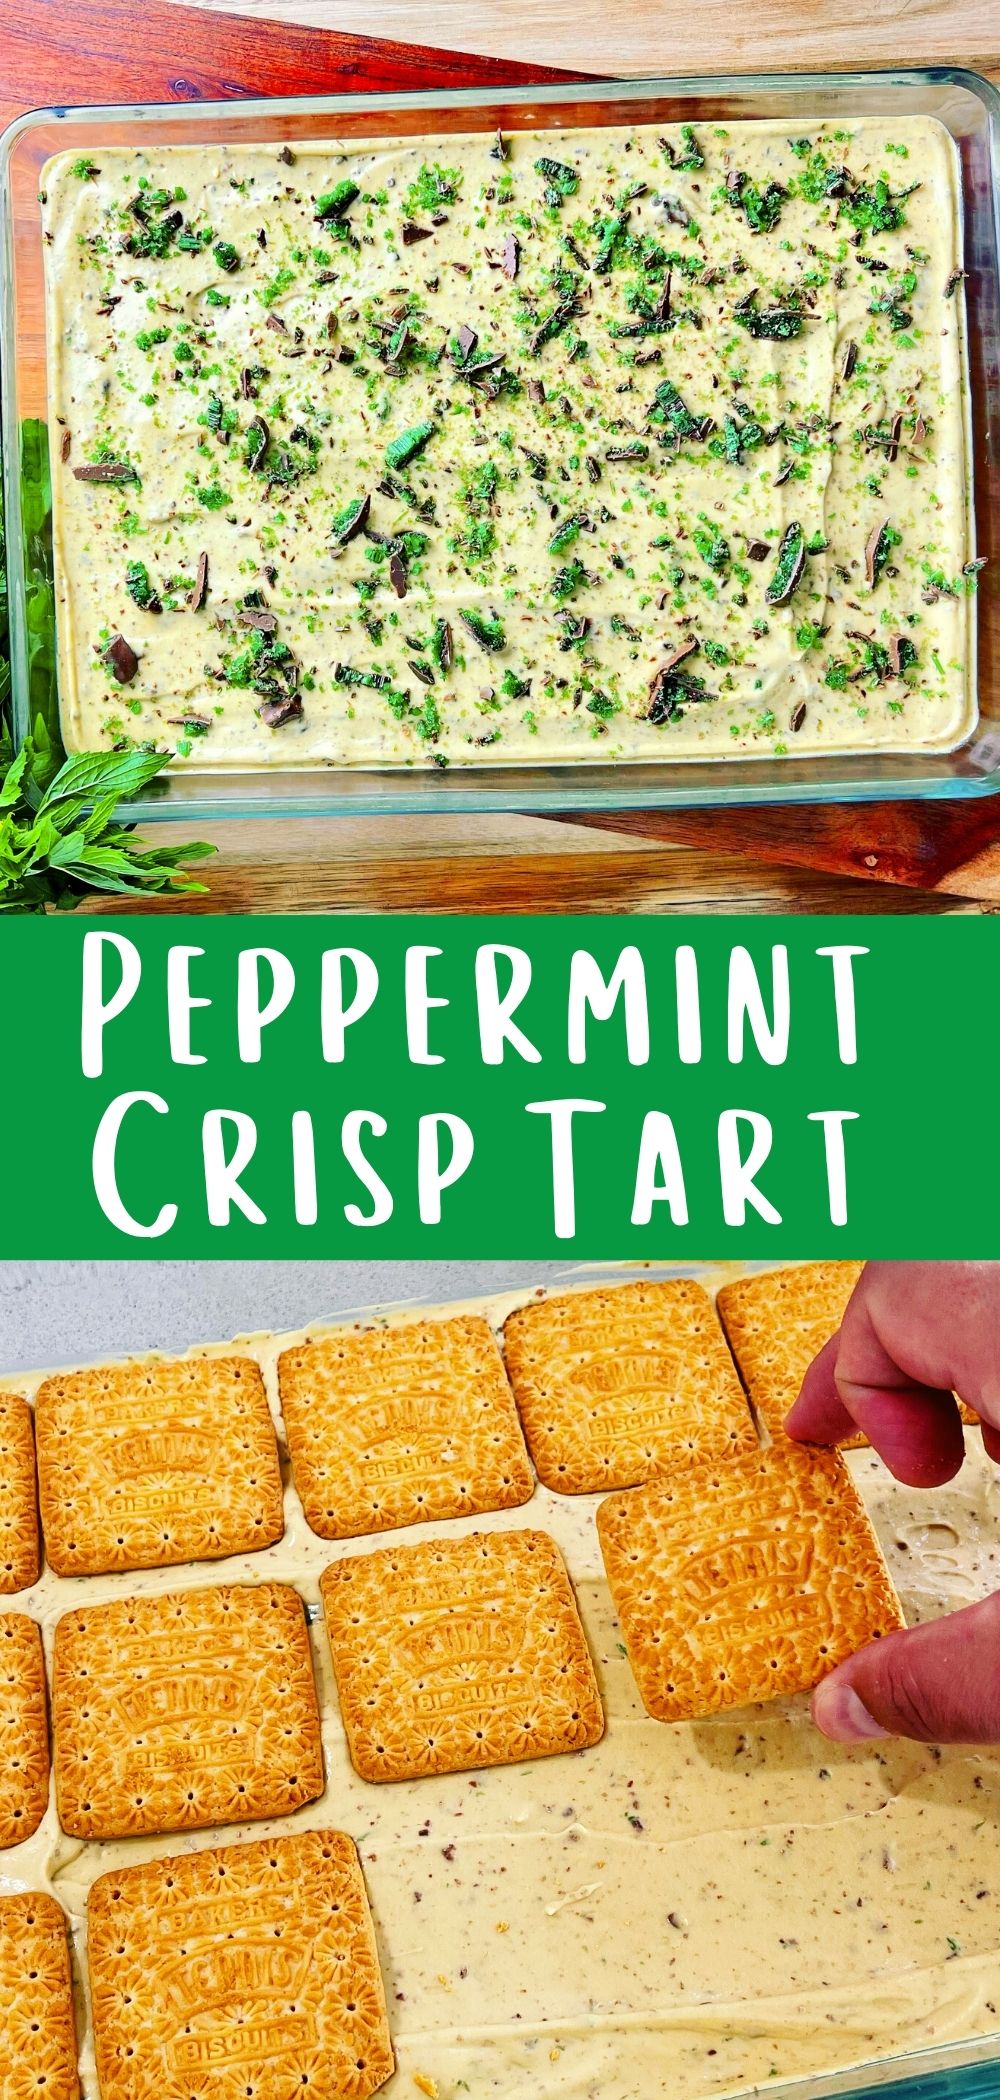 peppermint crisp tart in glass dish pinterest